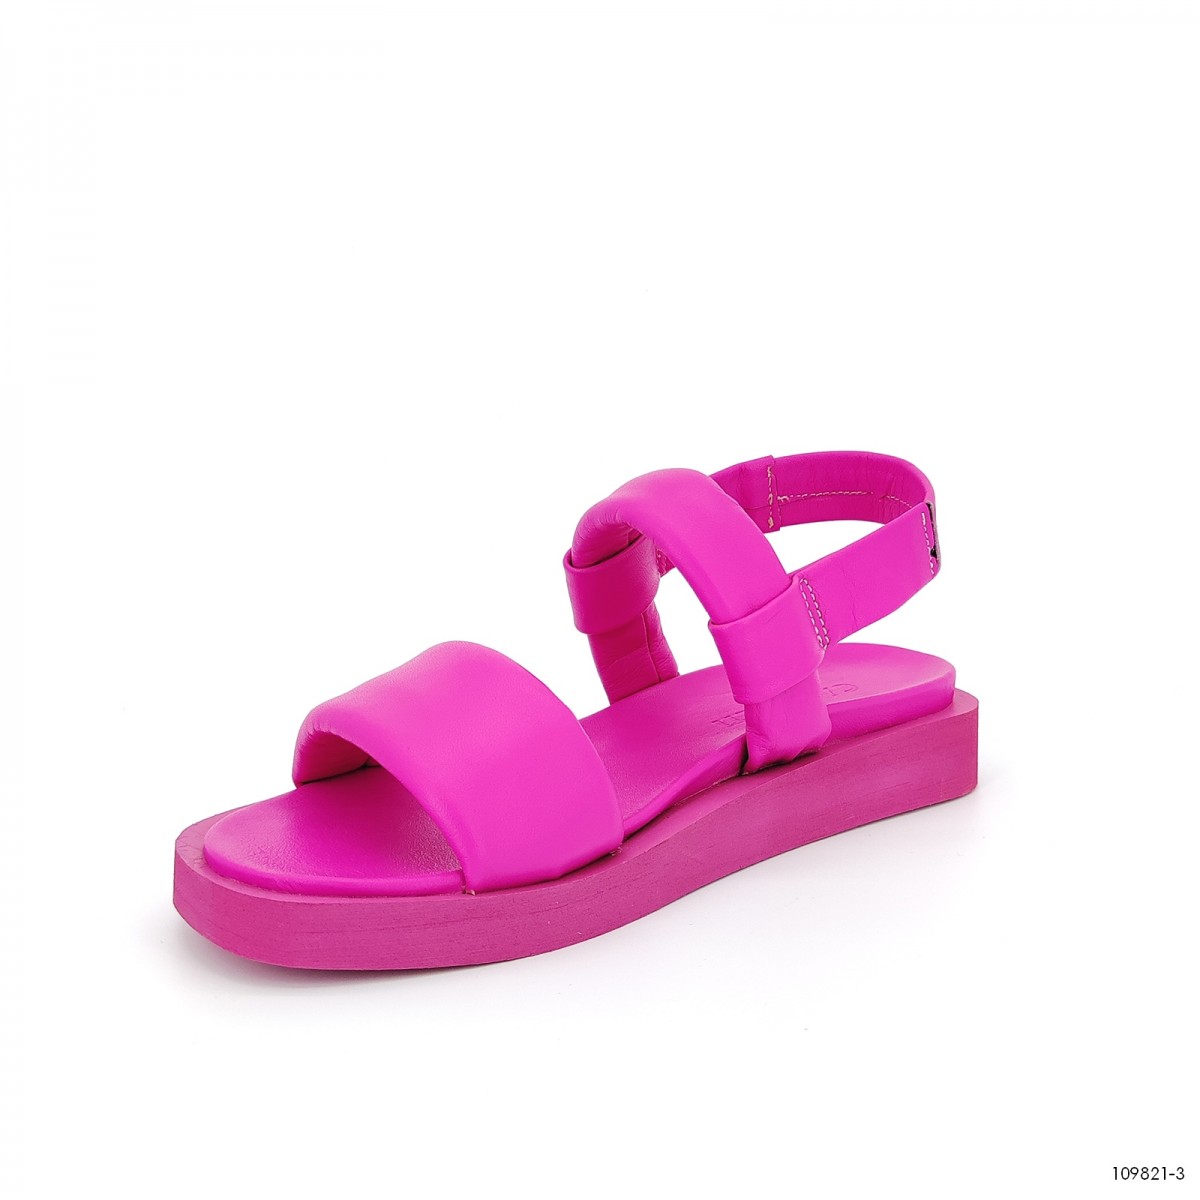  женские сандали летние Casoreti  розовый 